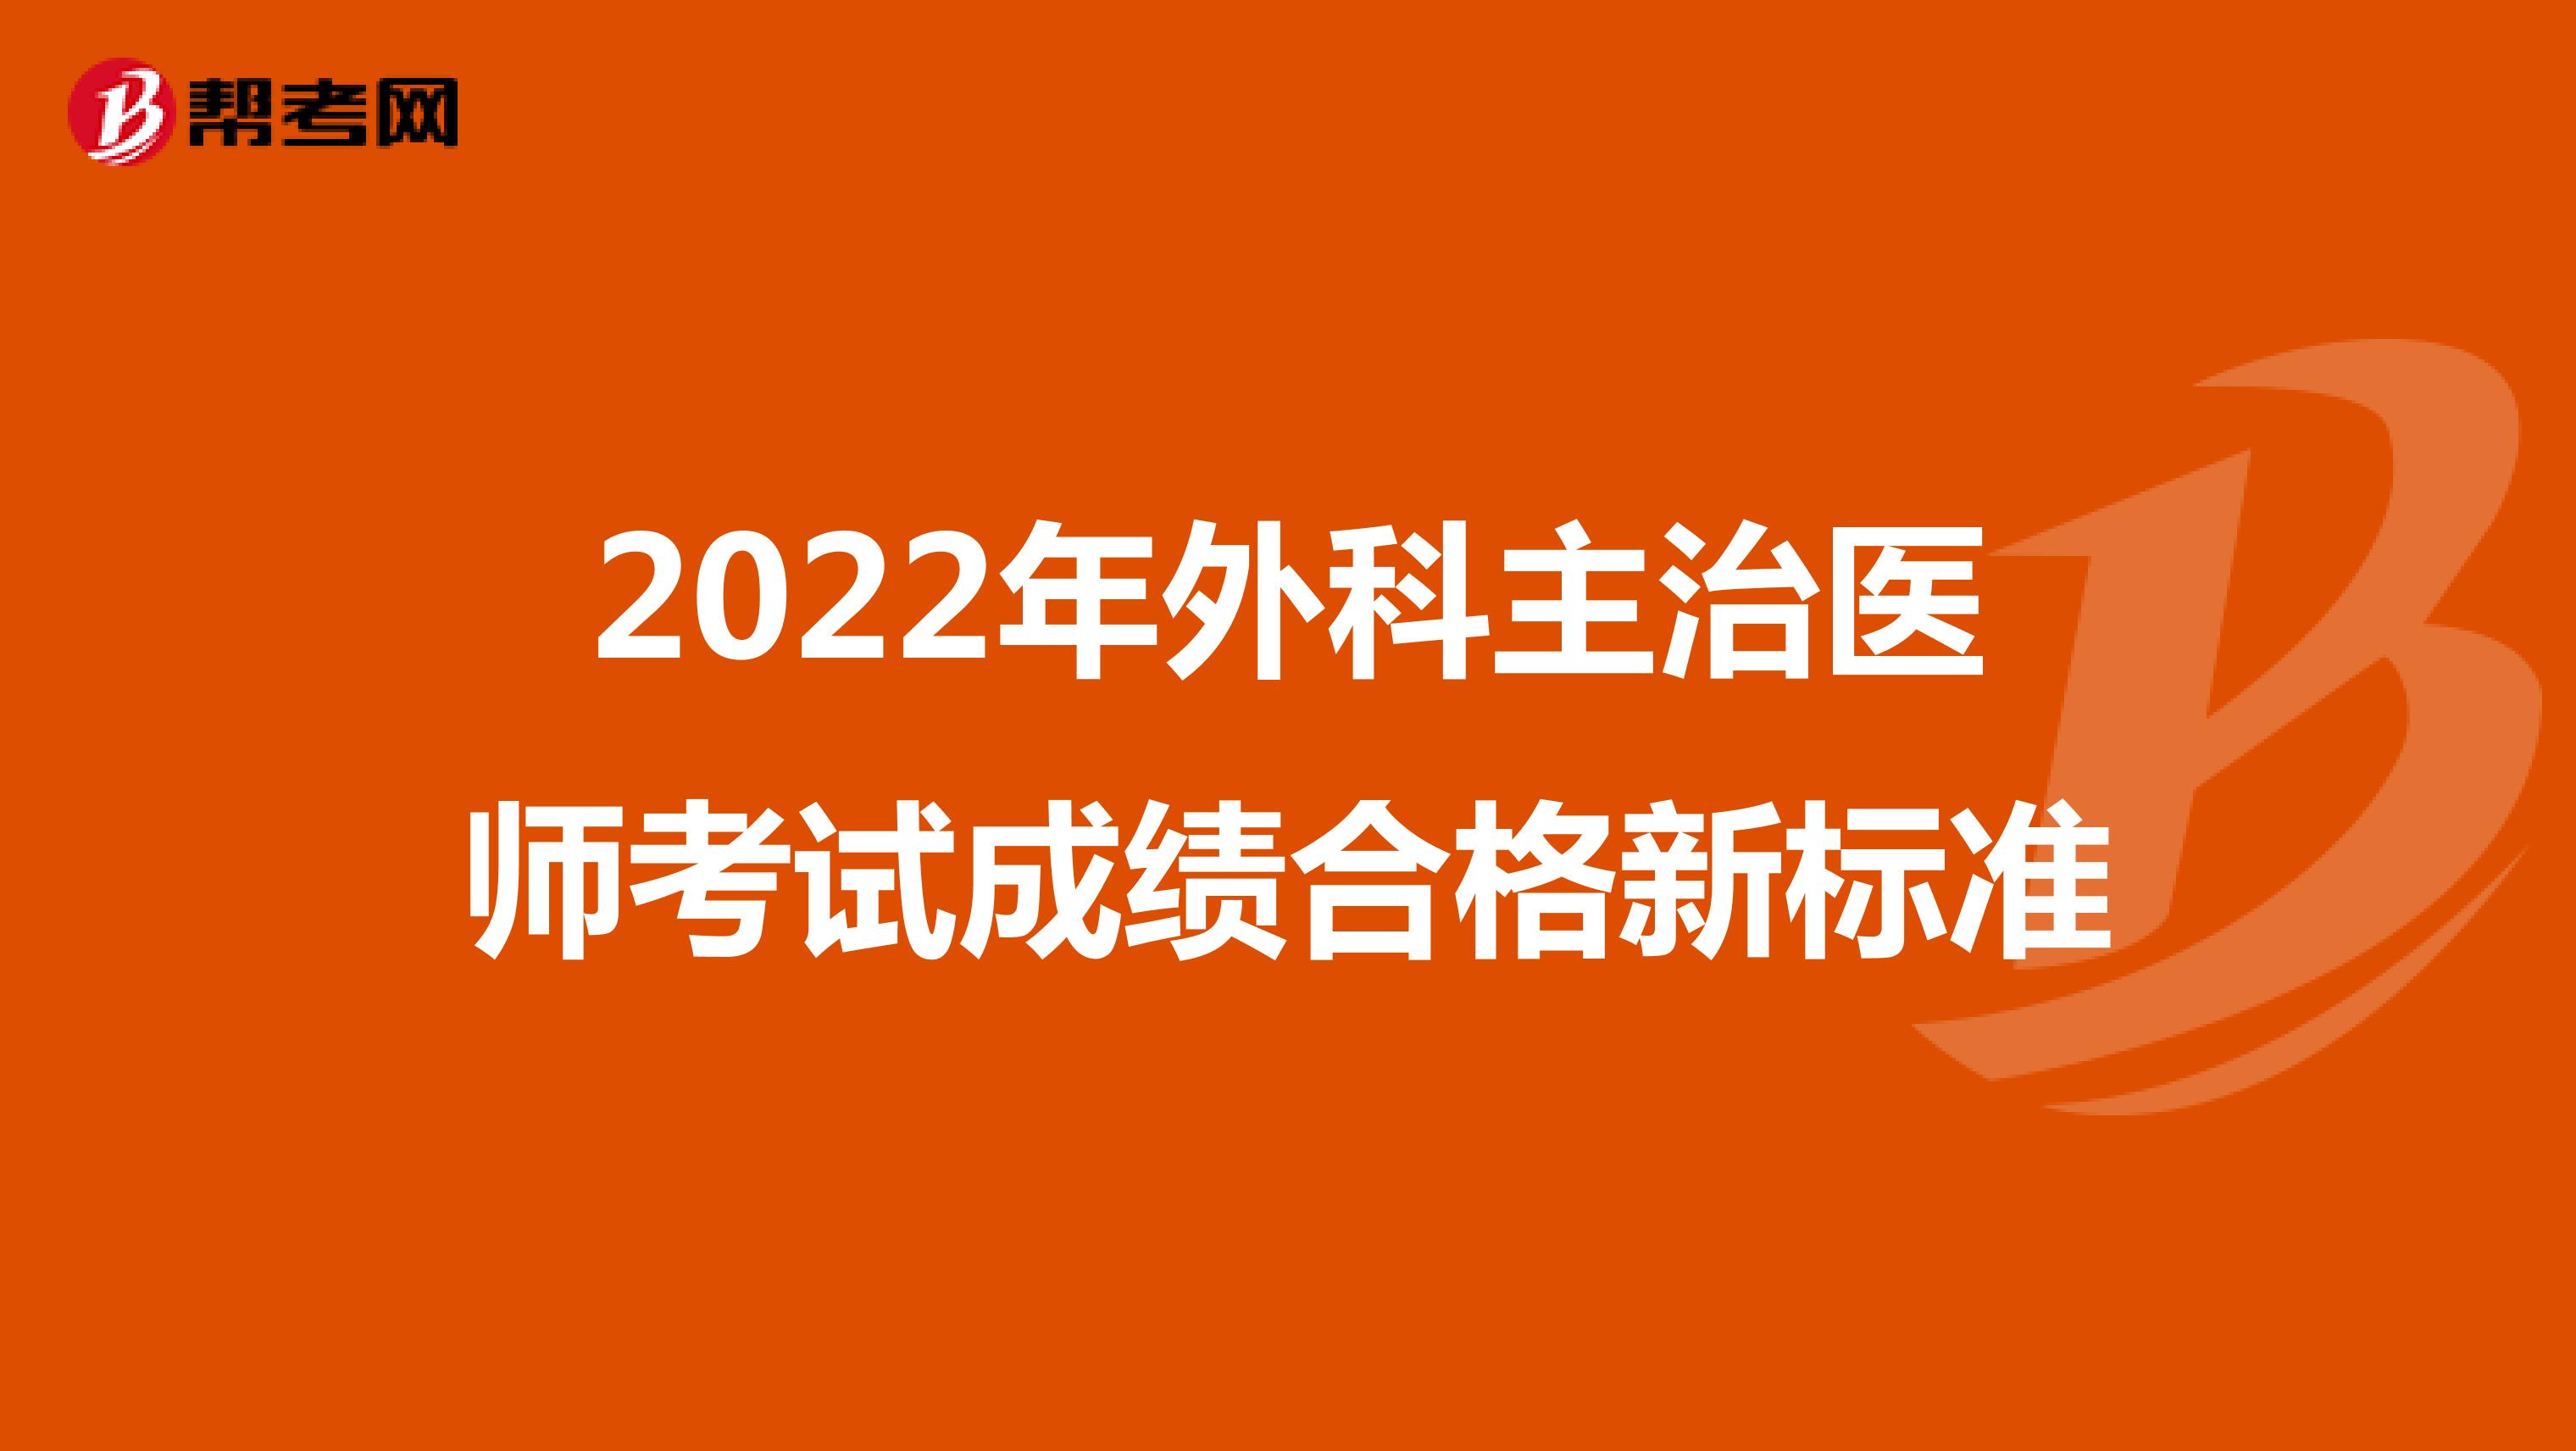 2022年外科主治医师考试成绩合格新标准